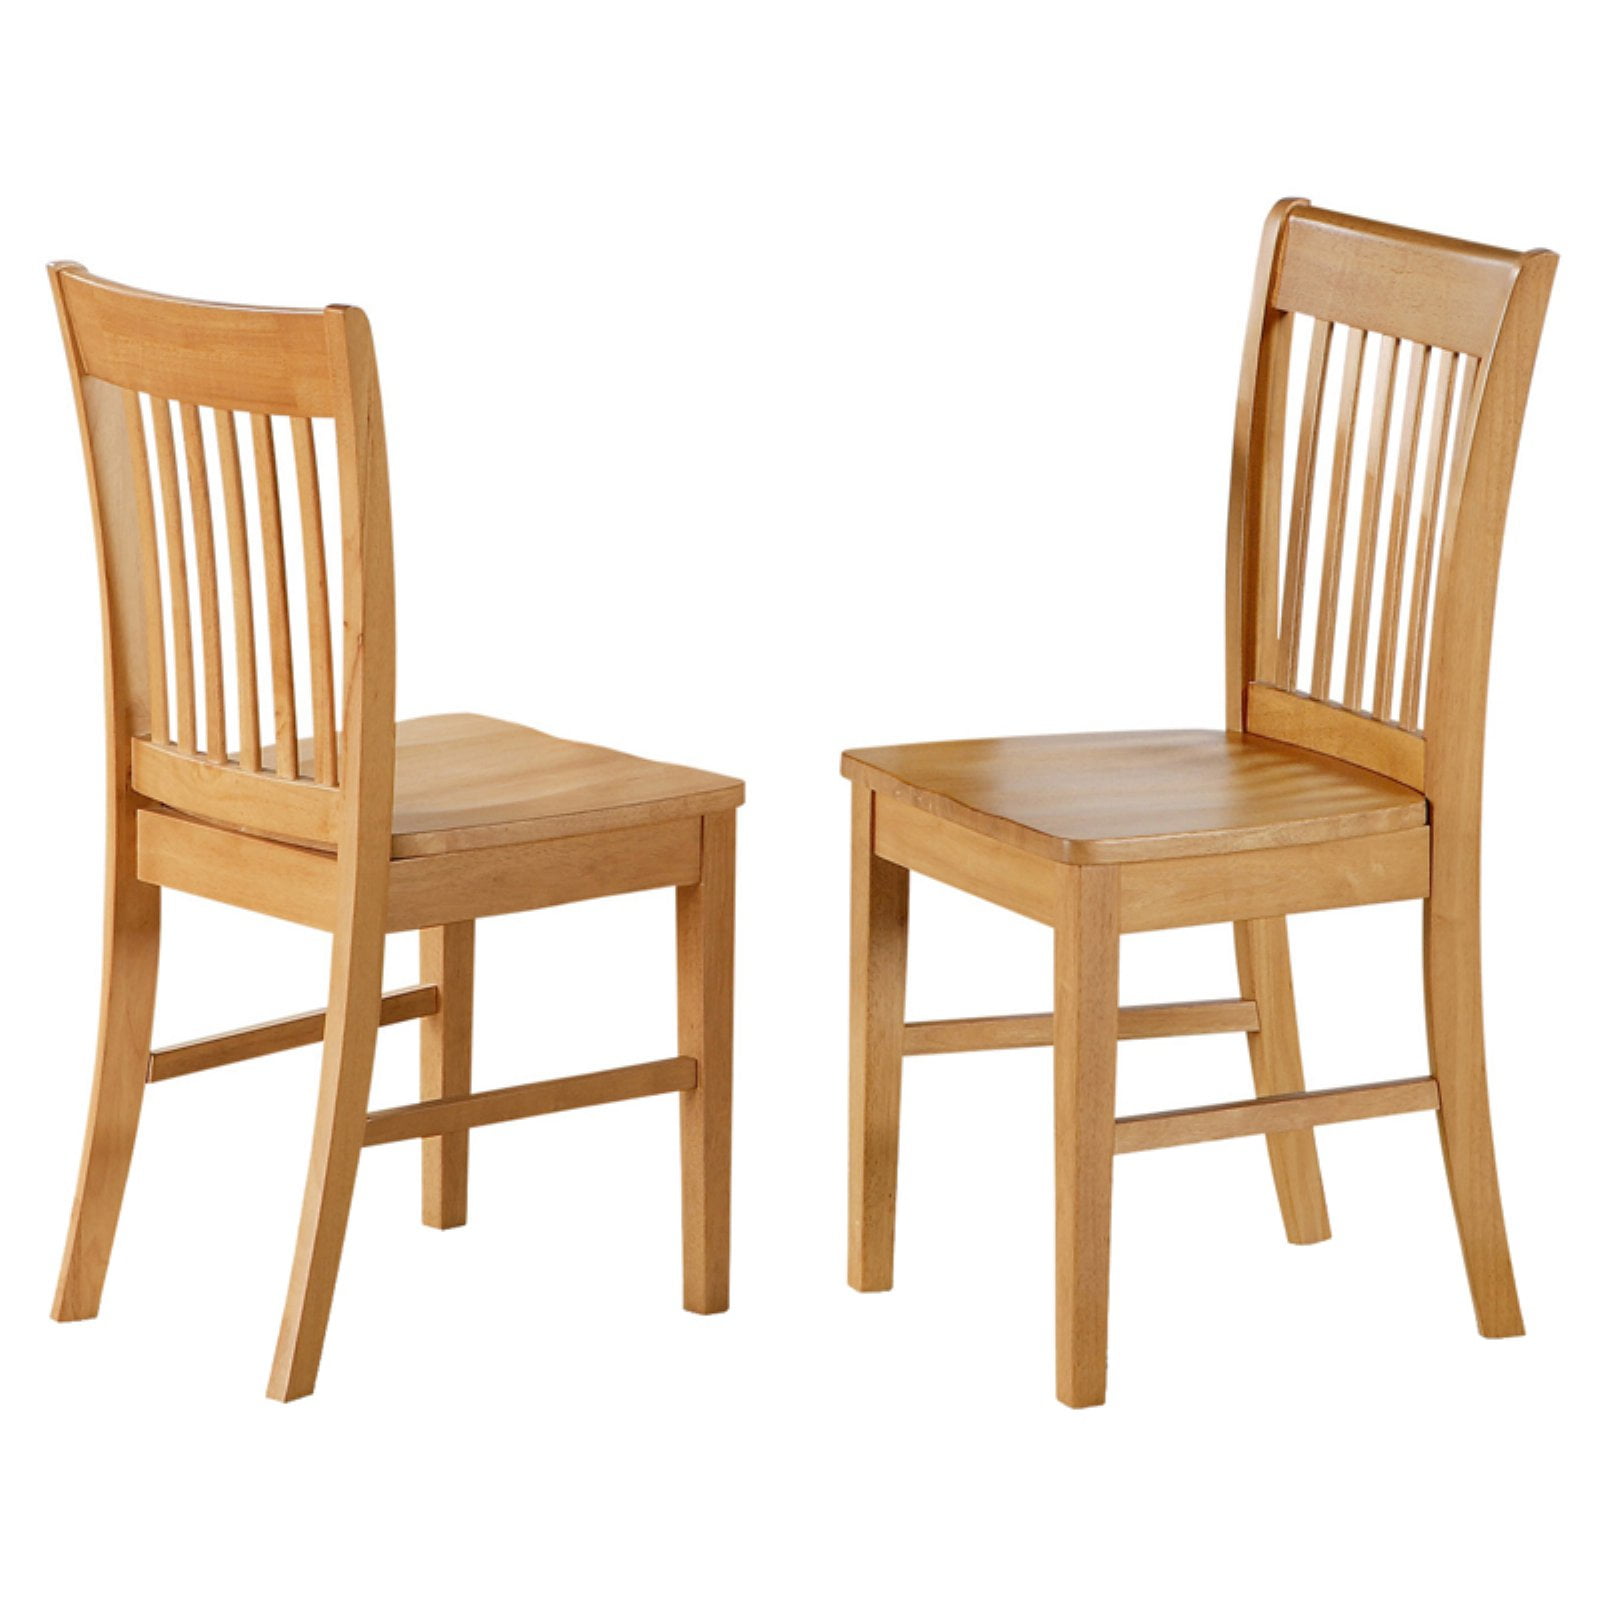 Комплект стульев 4 шт для кухни. Стул икеа деревянный. Стул икеа дерево. Стул икеа кухонный деревянный. Икеа стулья для кухни деревянные.